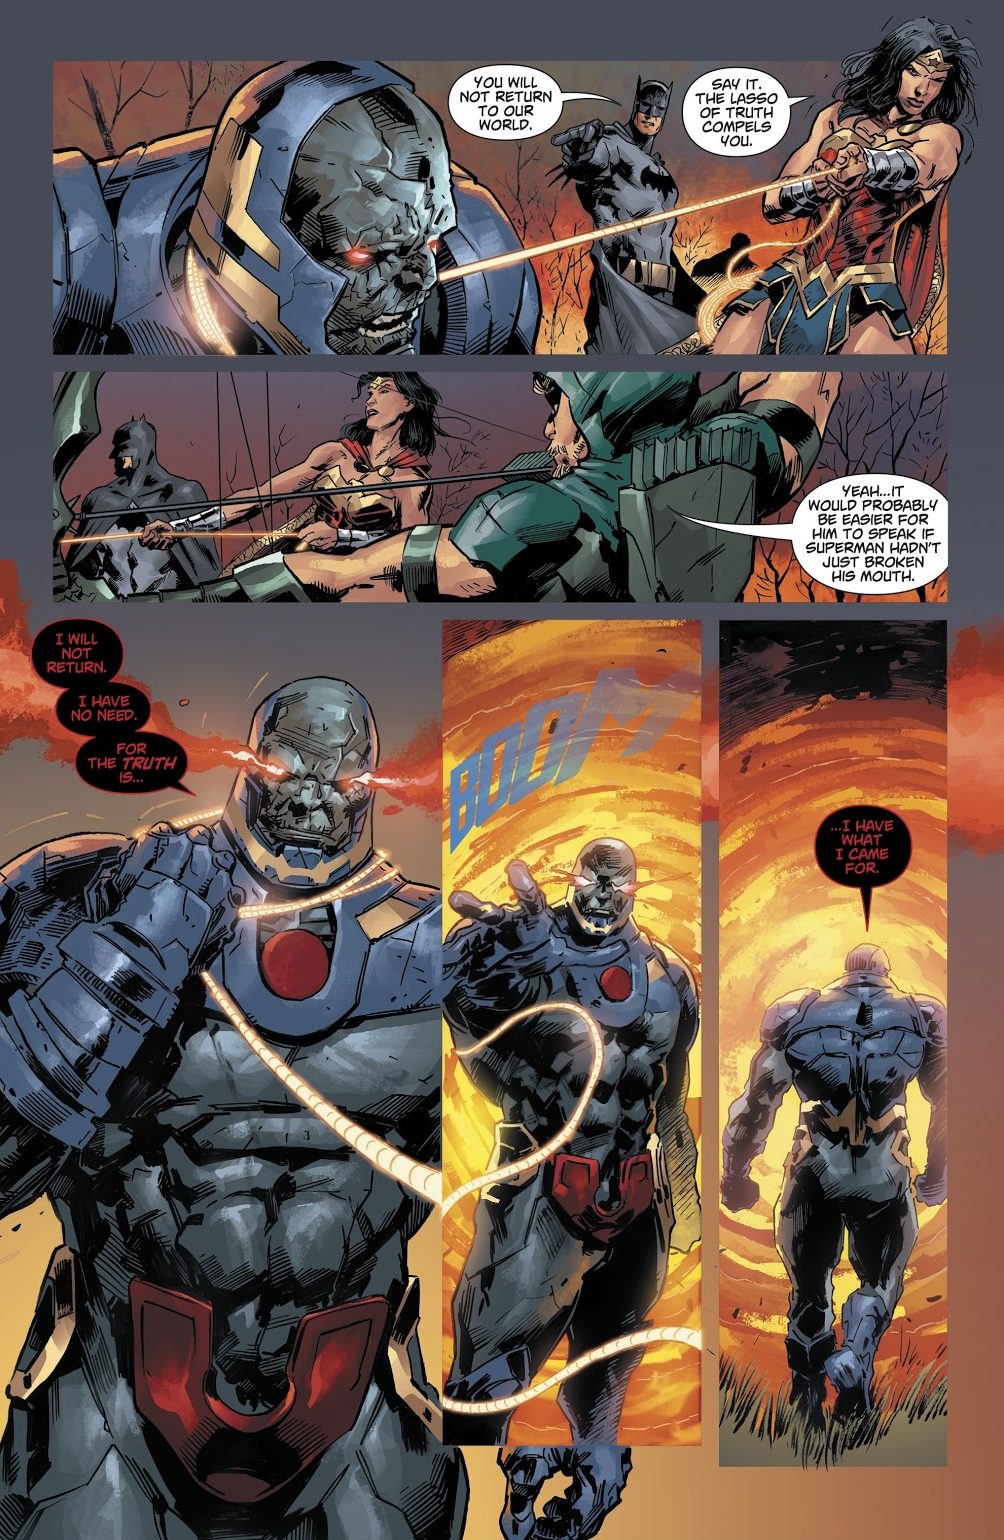 The Justice League Defeats Darkseid (DCeased)